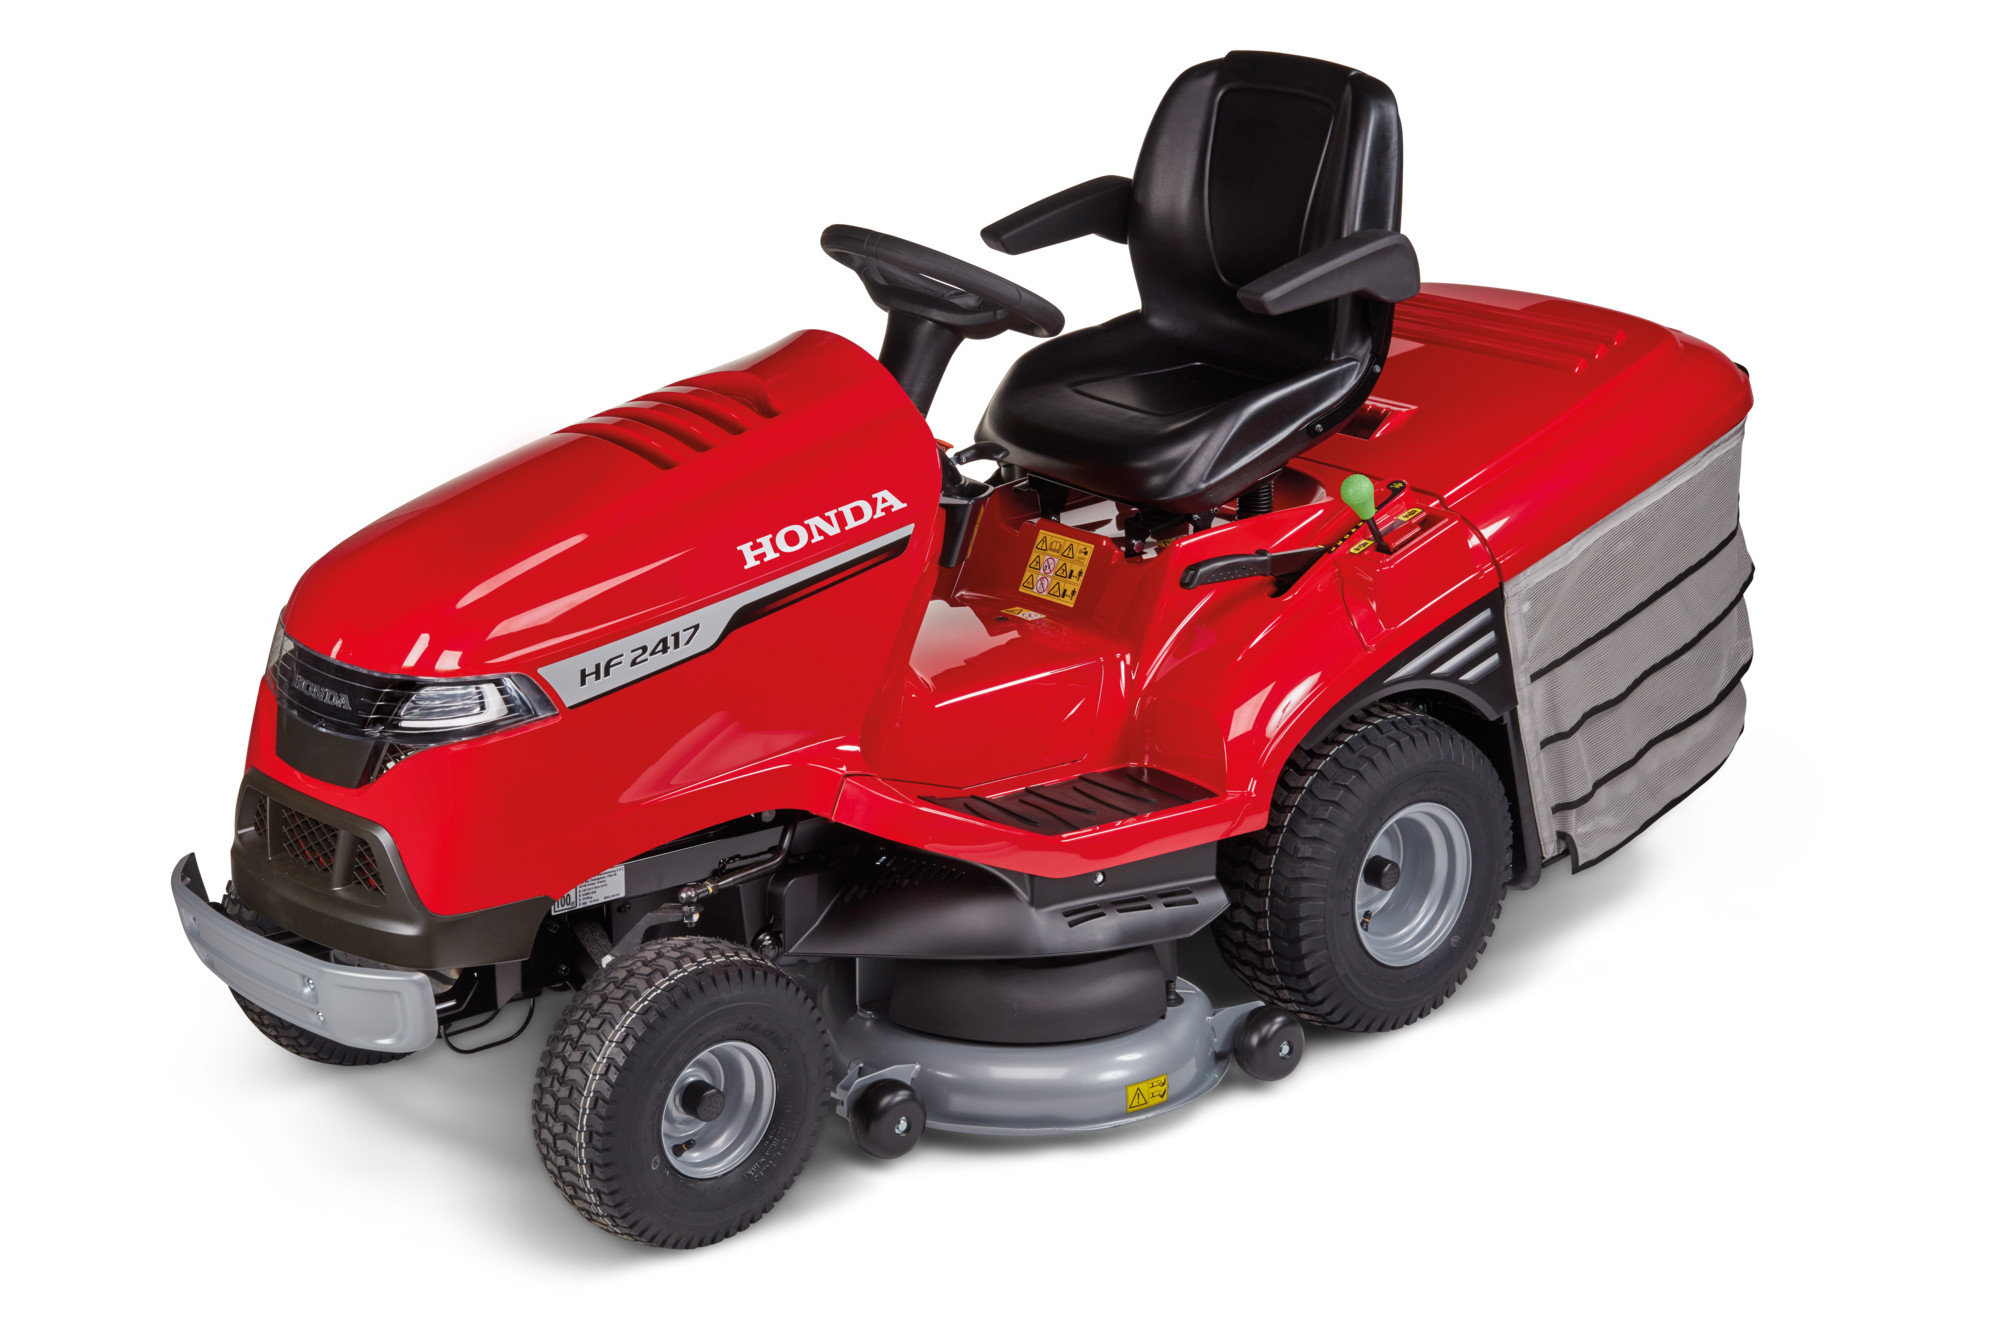 Zahradní traktor Honda HF 2417 HT /2020/